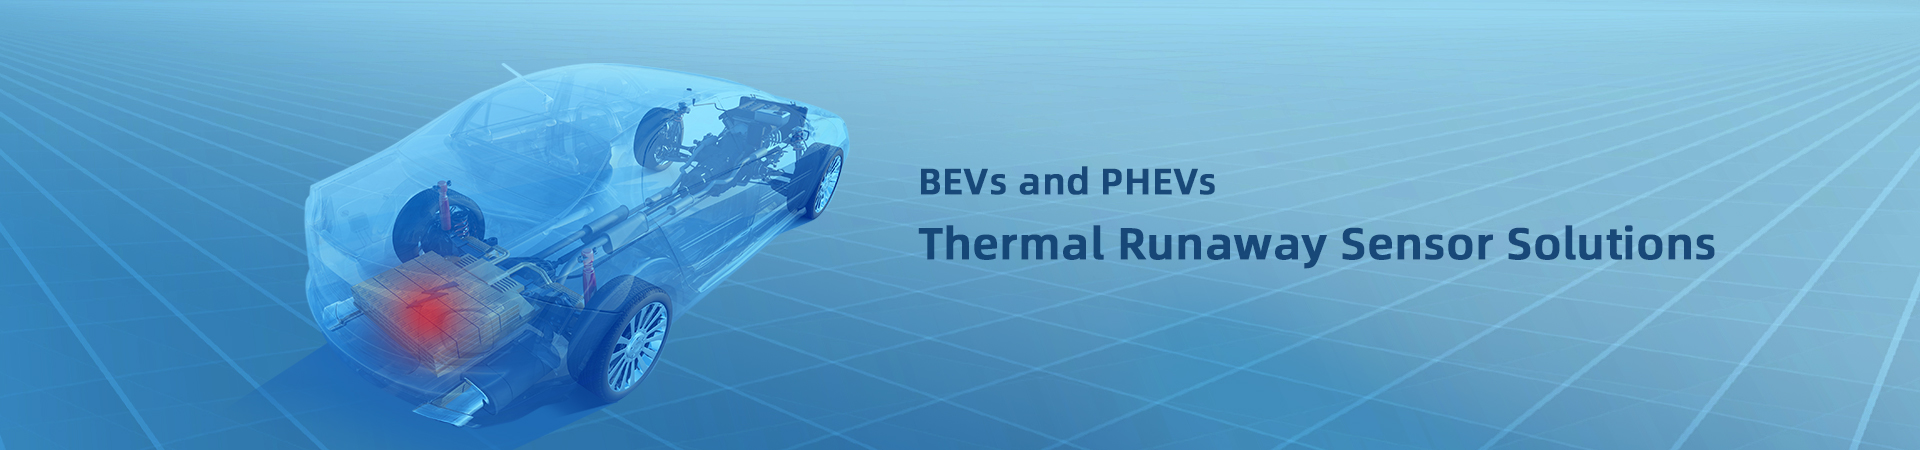 Thermal Runaway Sensor Solutions